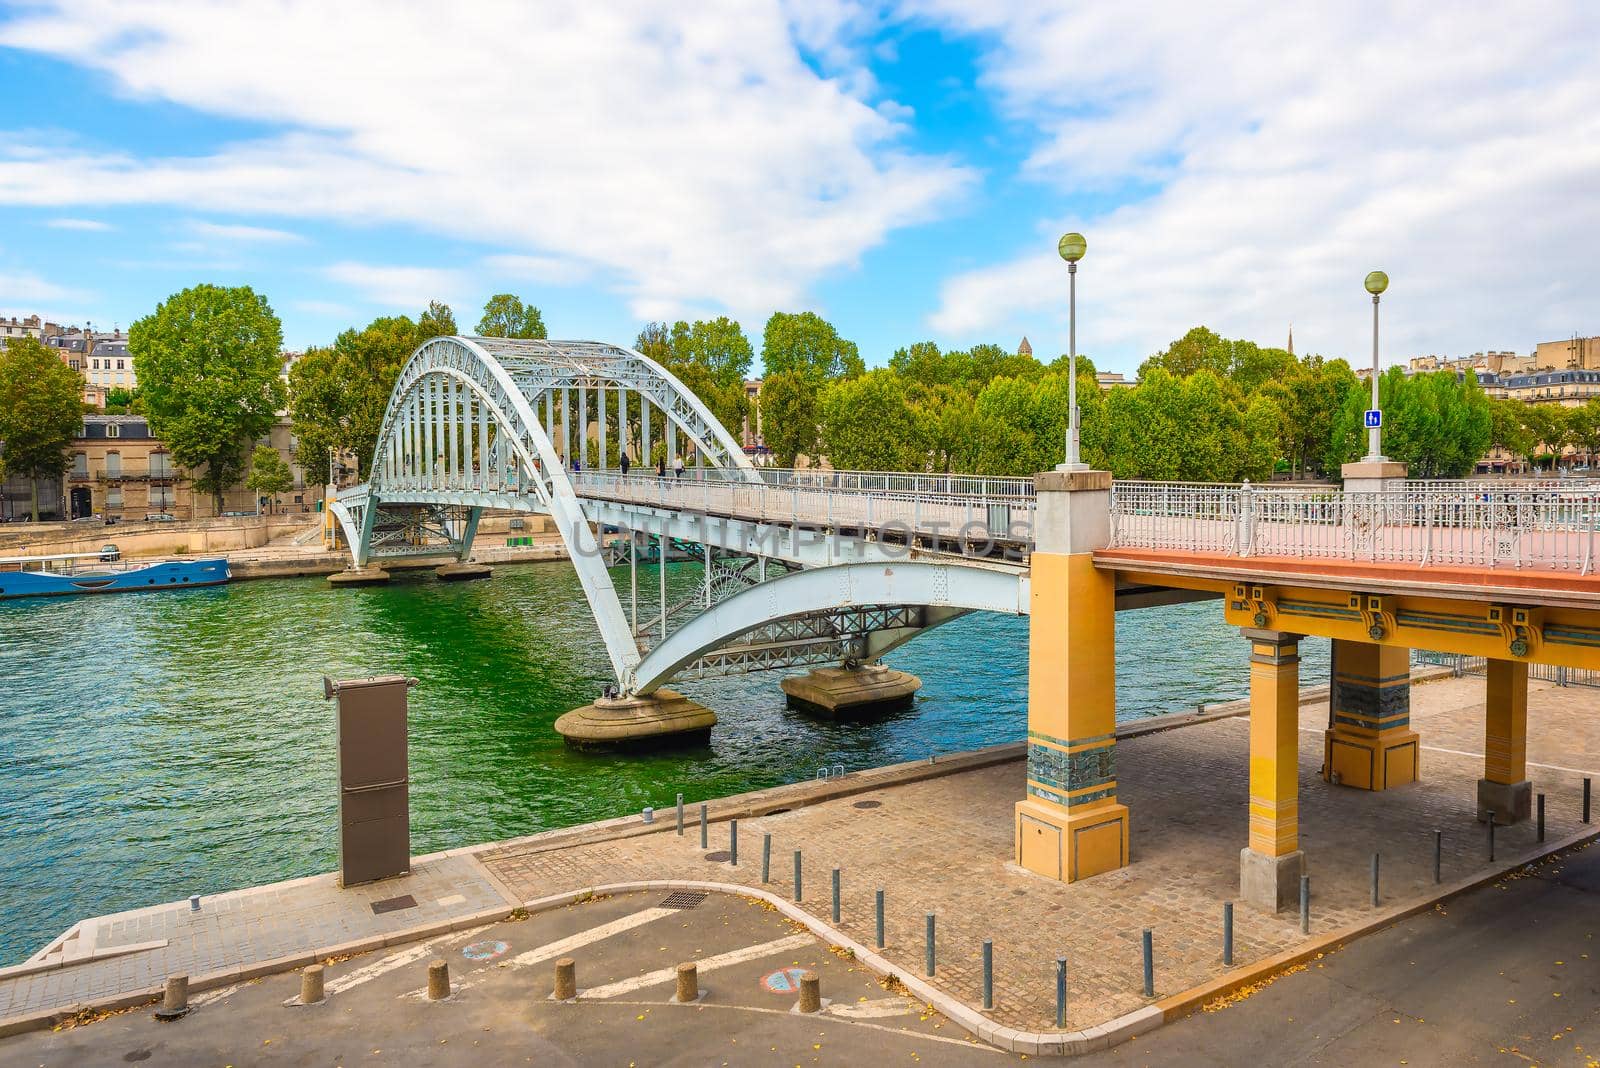 Debilly Bridge in Paris by Givaga